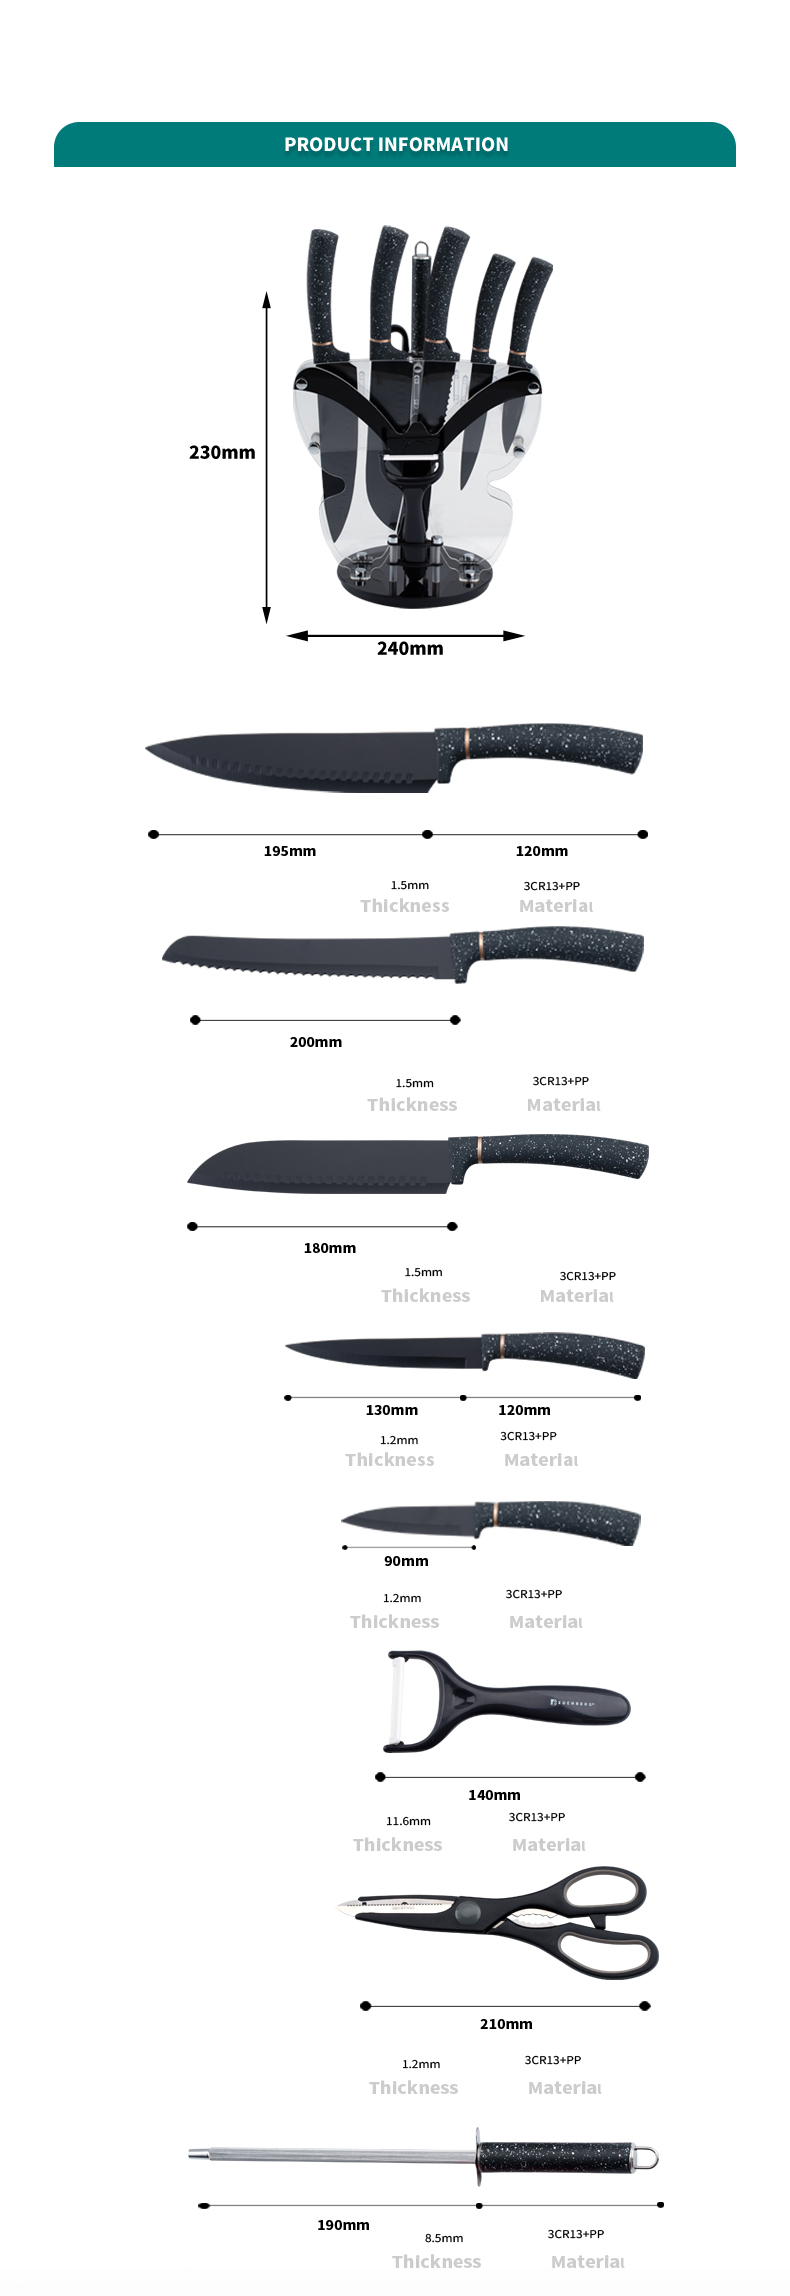 K125-Alta Qualidade Aço Inoxidável Chef Faca Faca de Cozinha Set-ZX | faca de cozinha, ferramentas de cozinha, molde de bolo de silicone, tábua de cortar, conjuntos de ferramentas de cozimento, faca de chef, faca de bife, faca de fatiador, faca utilitária, faca de aparar, bloco de faca, suporte de faca, faca Santoku, faca infantil, faca de plástico, pintura antiaderente Faca, faca colorida, faca de aço inoxidável, abridor de latas, abridor de garrafas, coador de chá, ralador, batedor de ovos, ferramenta de cozinha de nylon, ferramenta de cozinha de silicone, cortador de biscoitos, conjunto de facas de cozinha, apontador de facas, descascador, faca de bolo, faca de queijo, pizza Faca, espátula de silicone, colher de silicone, pinça de comida, faca forjada, tesoura de cozinha, facas de cozimento de bolo, facas de cozinha infantil, faca de escultura